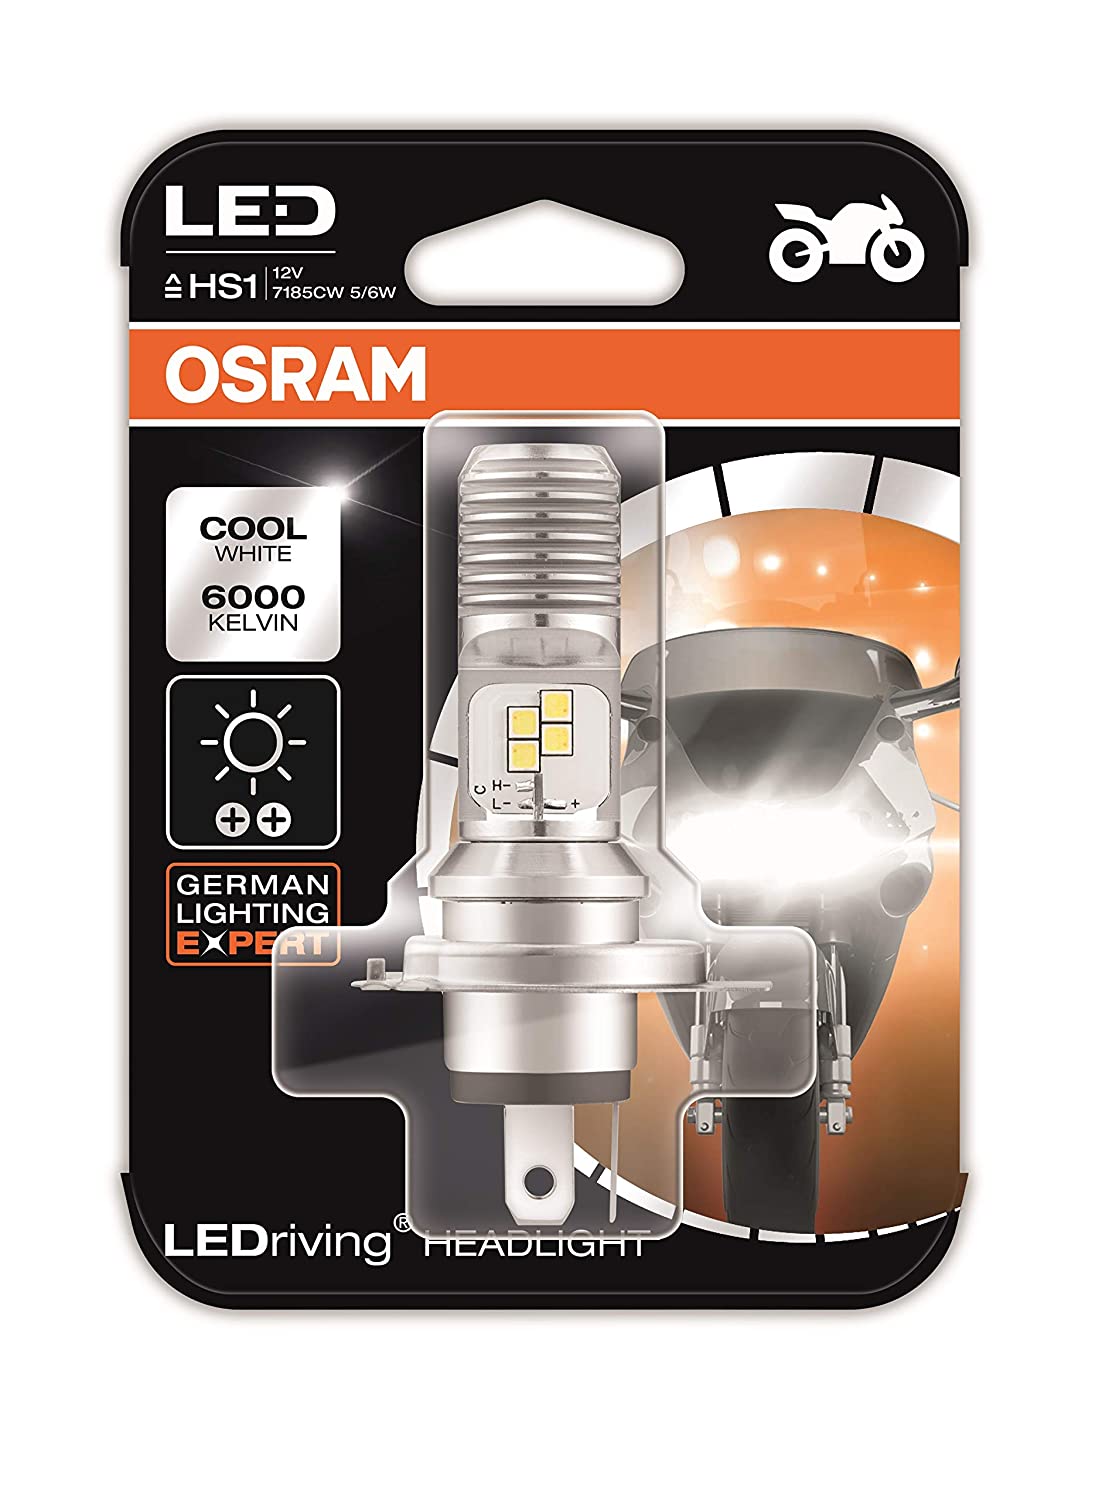 Osram LEDriving HEADLIGHT for bikes HS1 7285CW 5/6W 12V PX43T Blister Pack,  Cool White : : Car & Motorbike